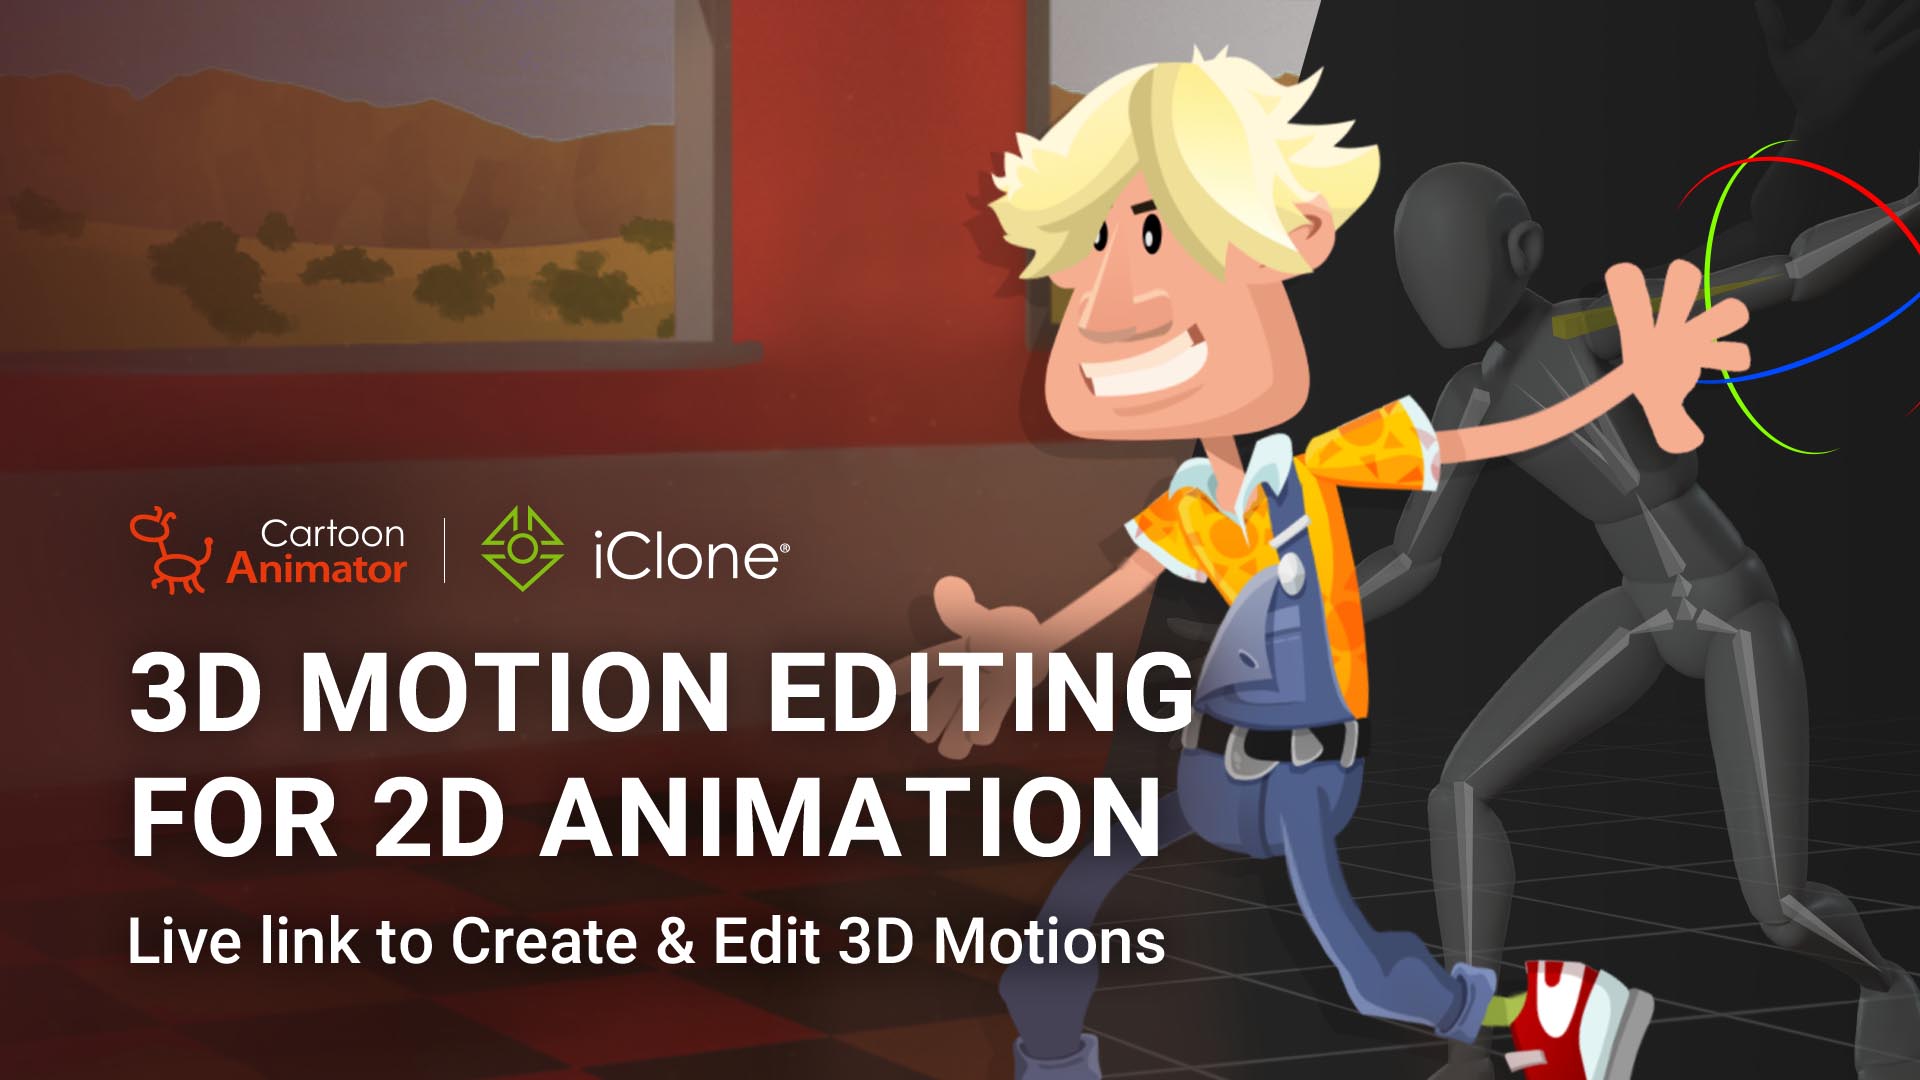 Animation edits